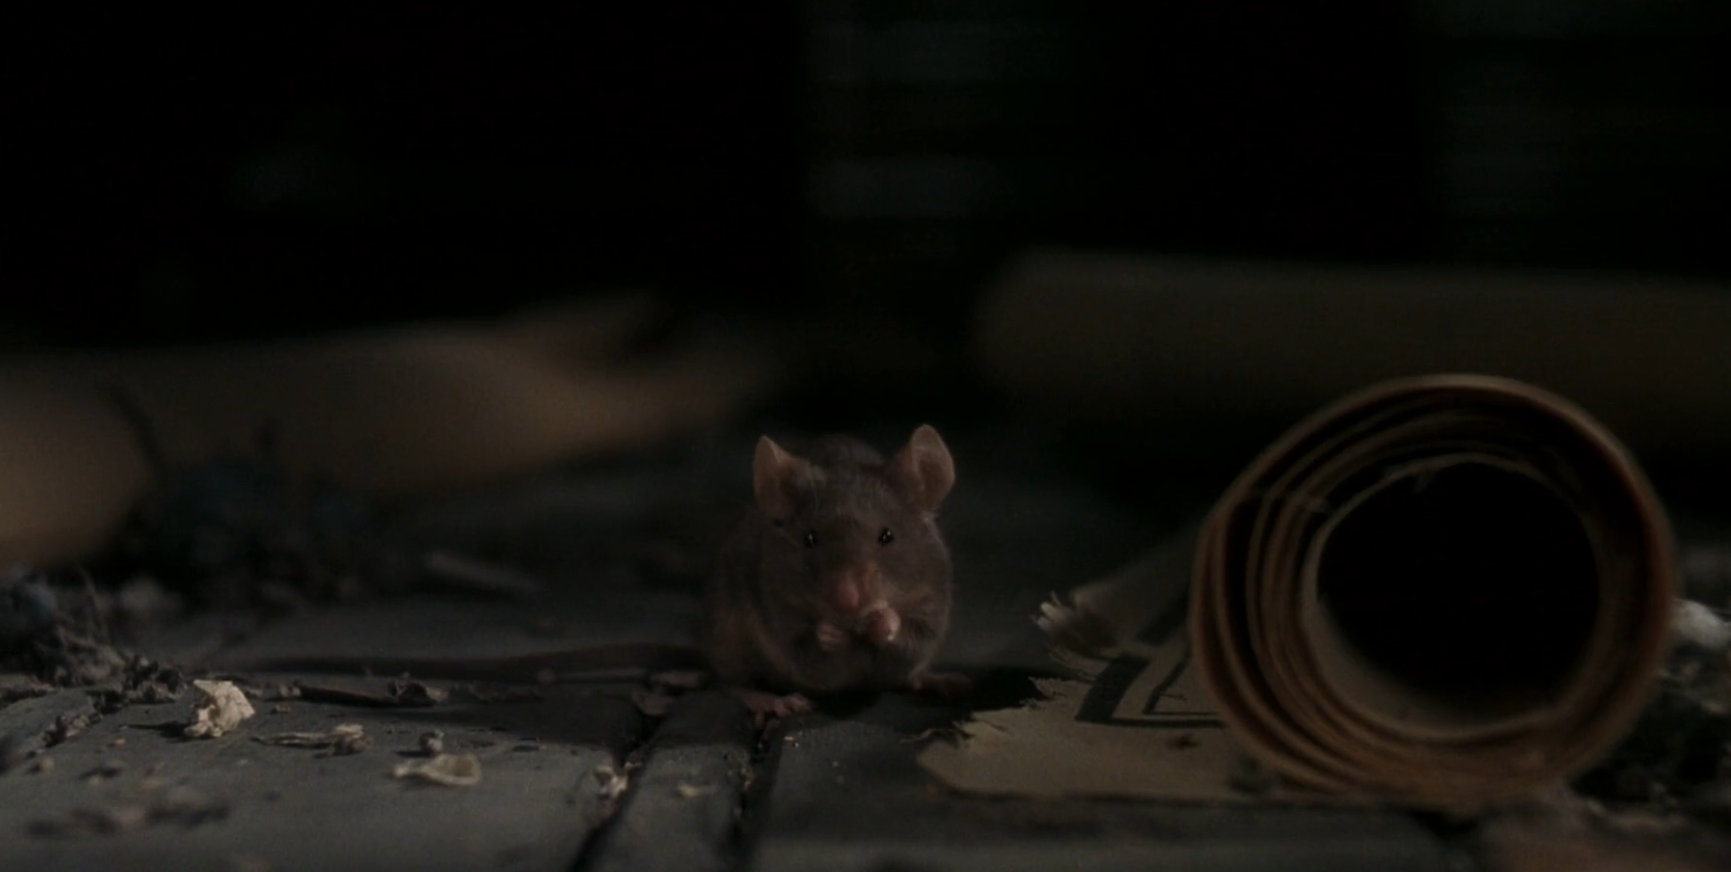 小老鼠有了高智商，上百个捕鼠器都没用，一部搞笑电影《捕鼠记》